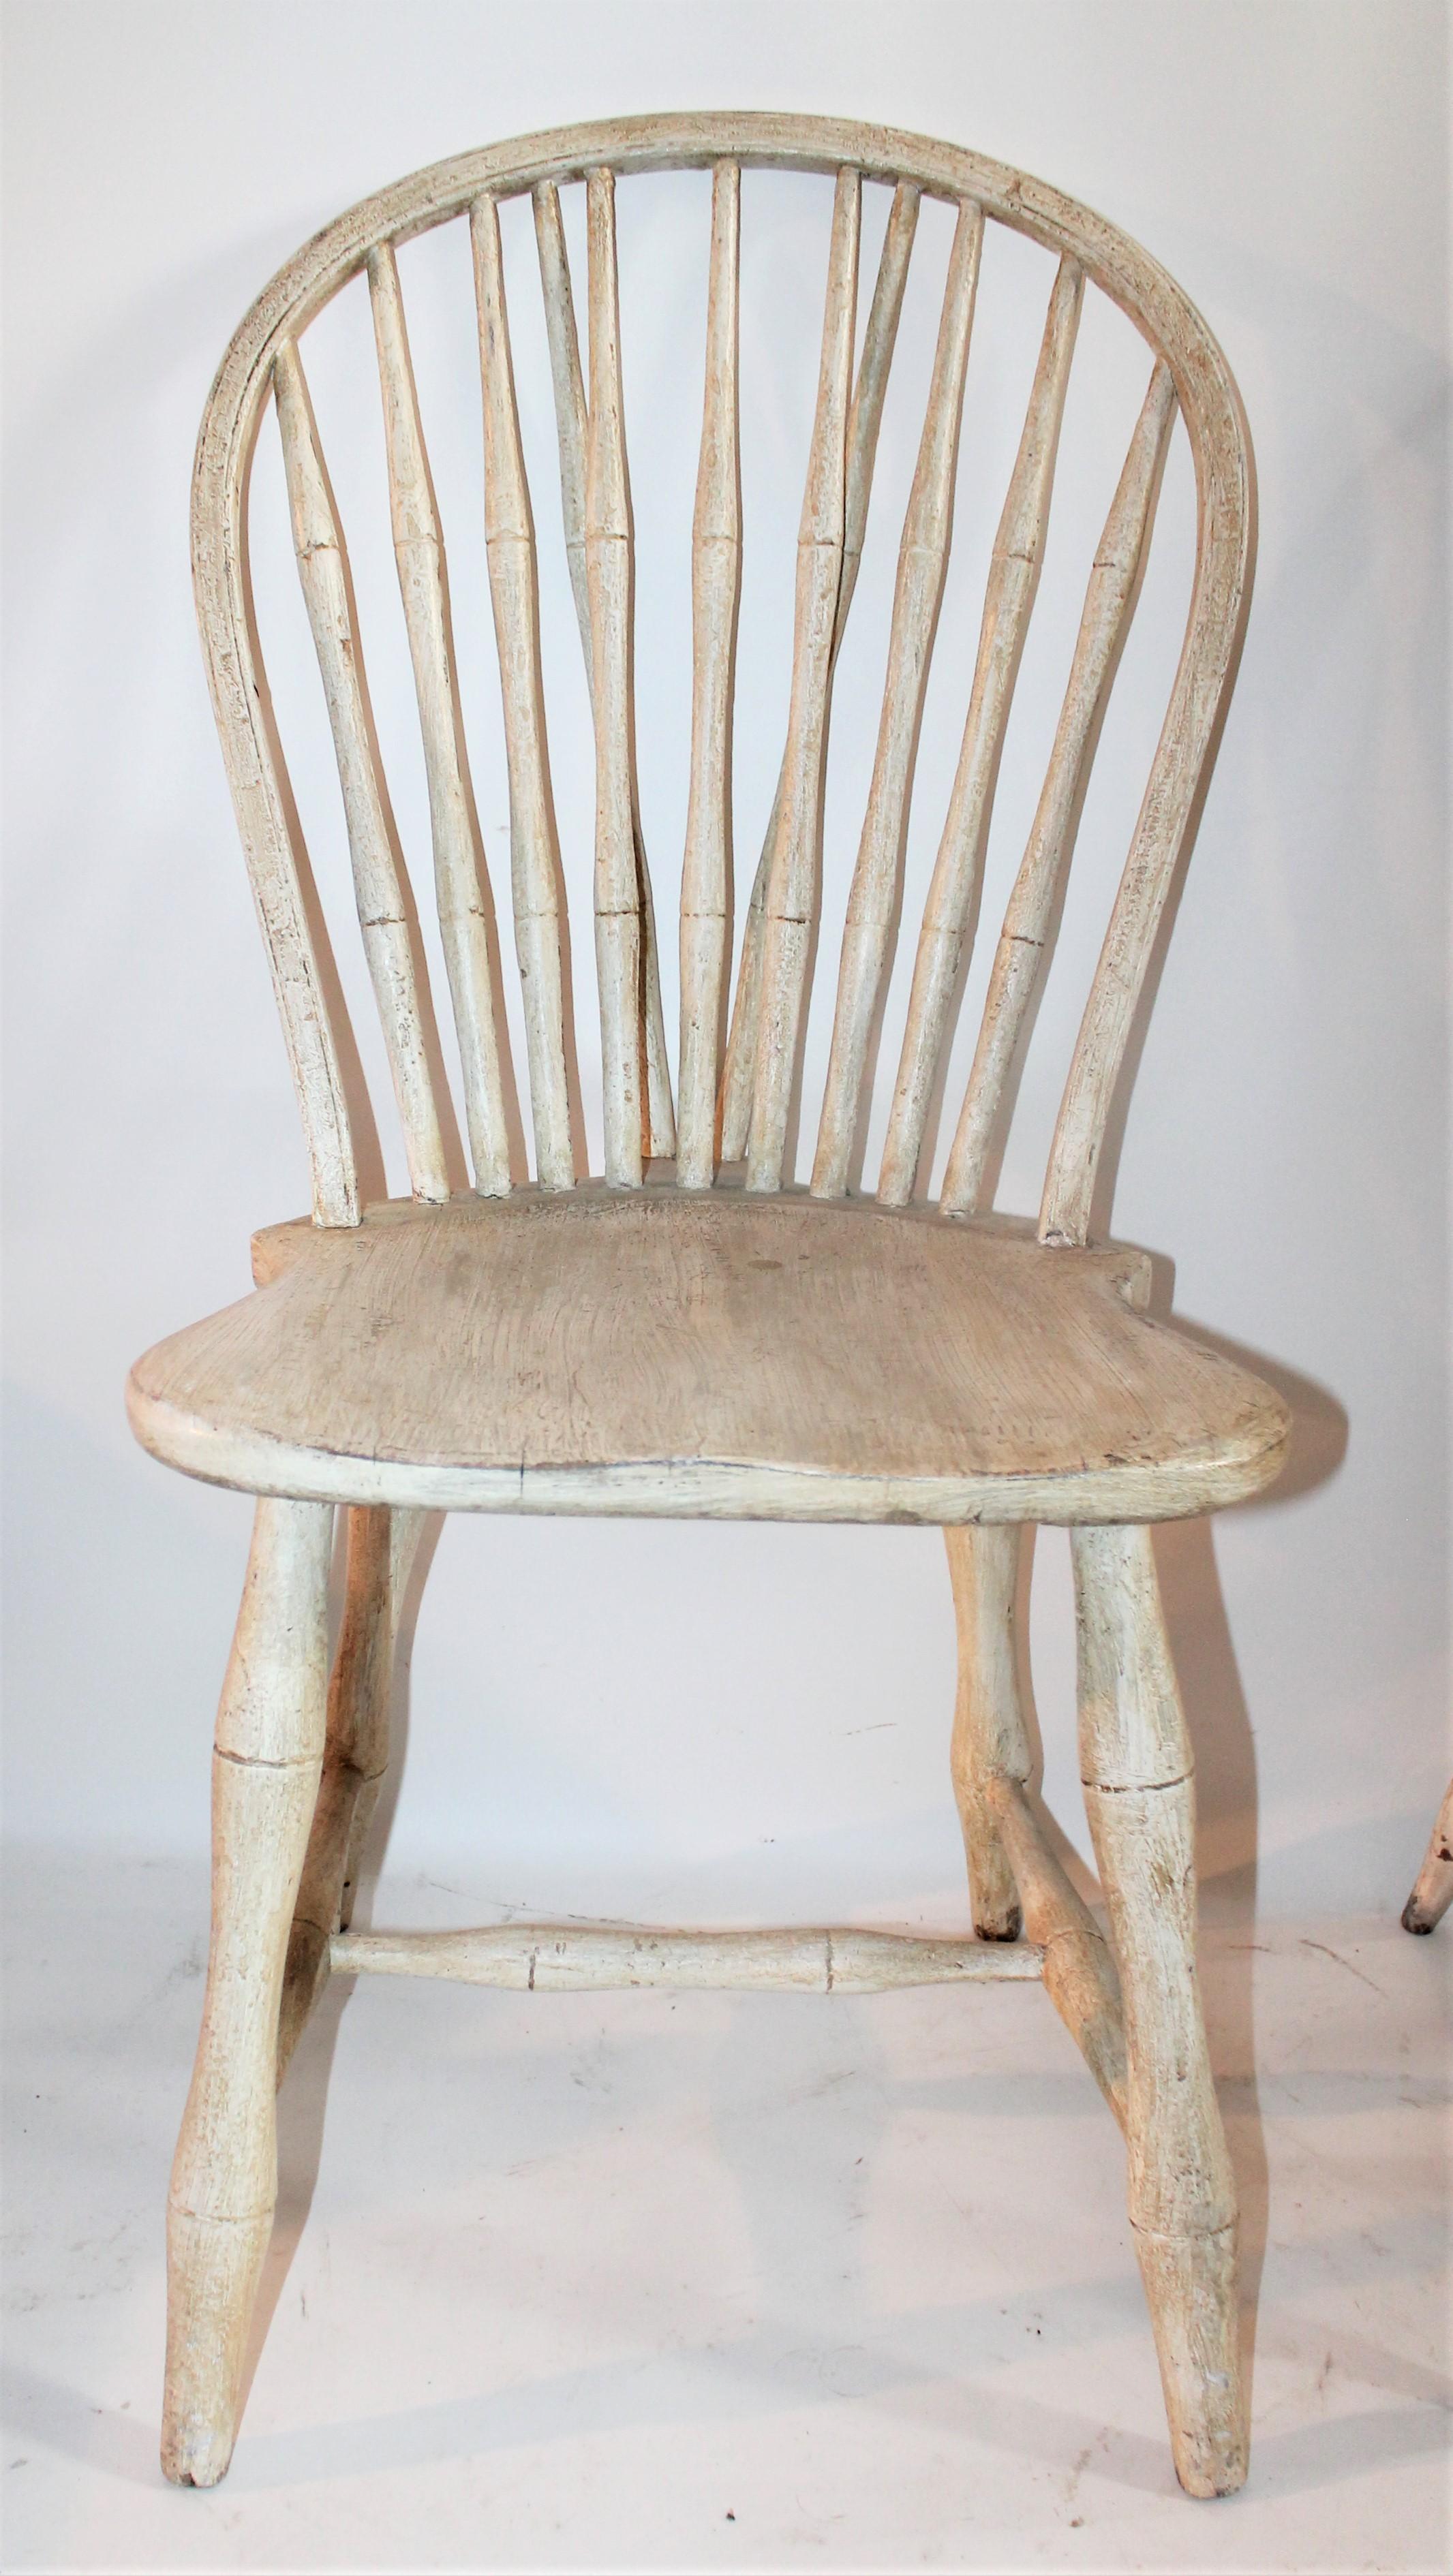 Paire de chaises Windsor accumulées du 19e siècle, peintes d'origine, en surface ancienne. Il s'agit de deux chaises différentes assemblées.